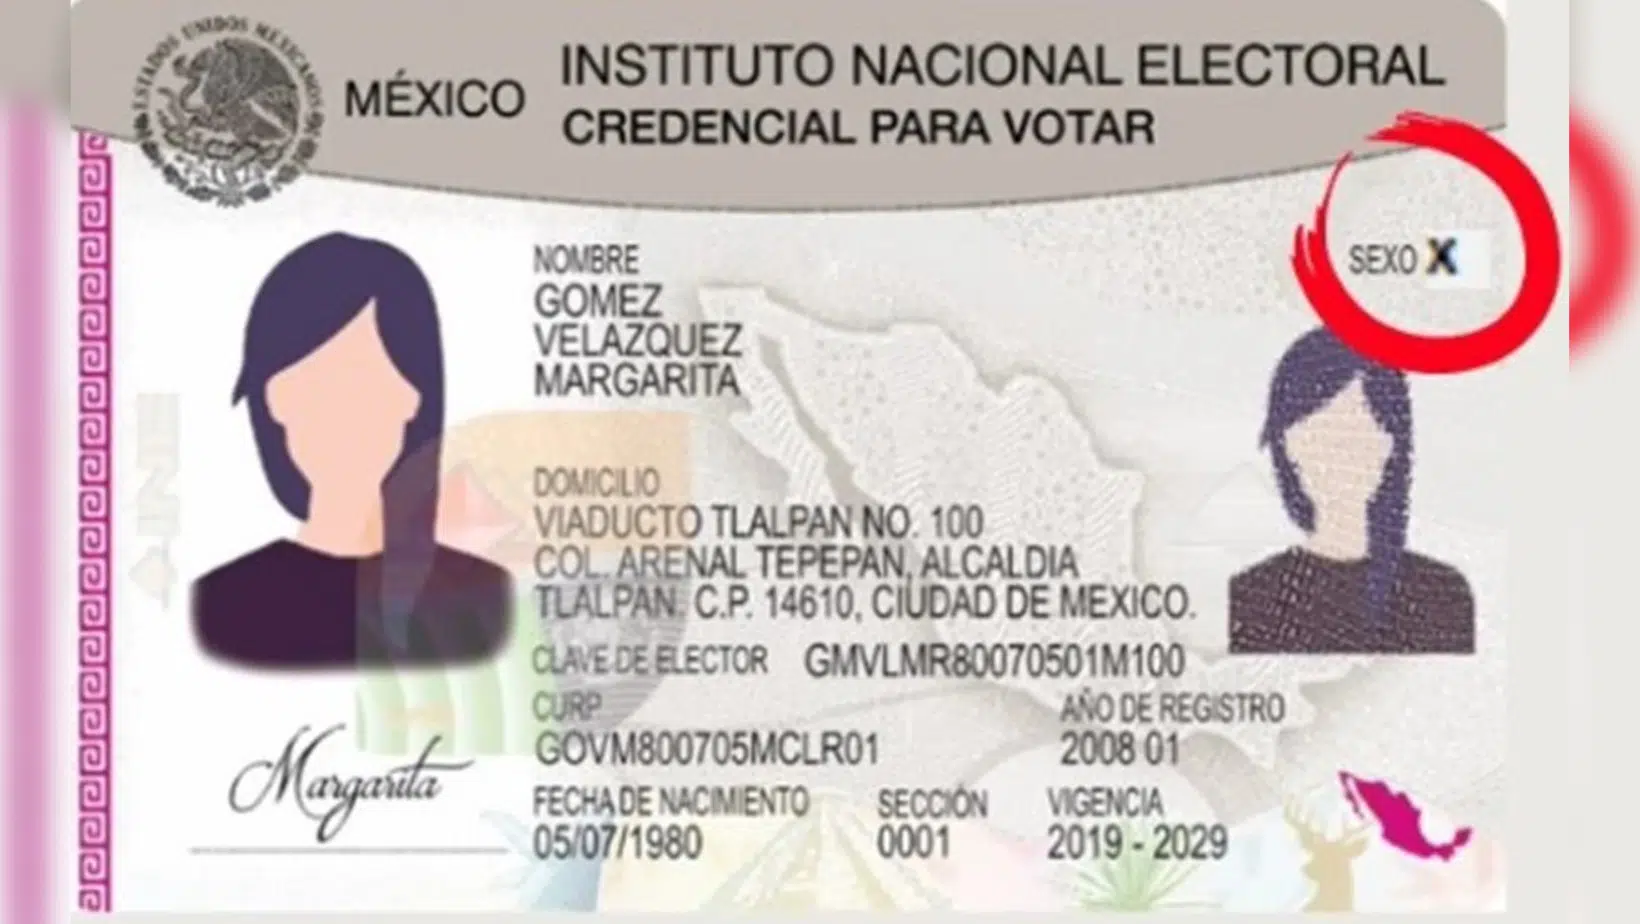 INE Credencial de Elector No Binaria